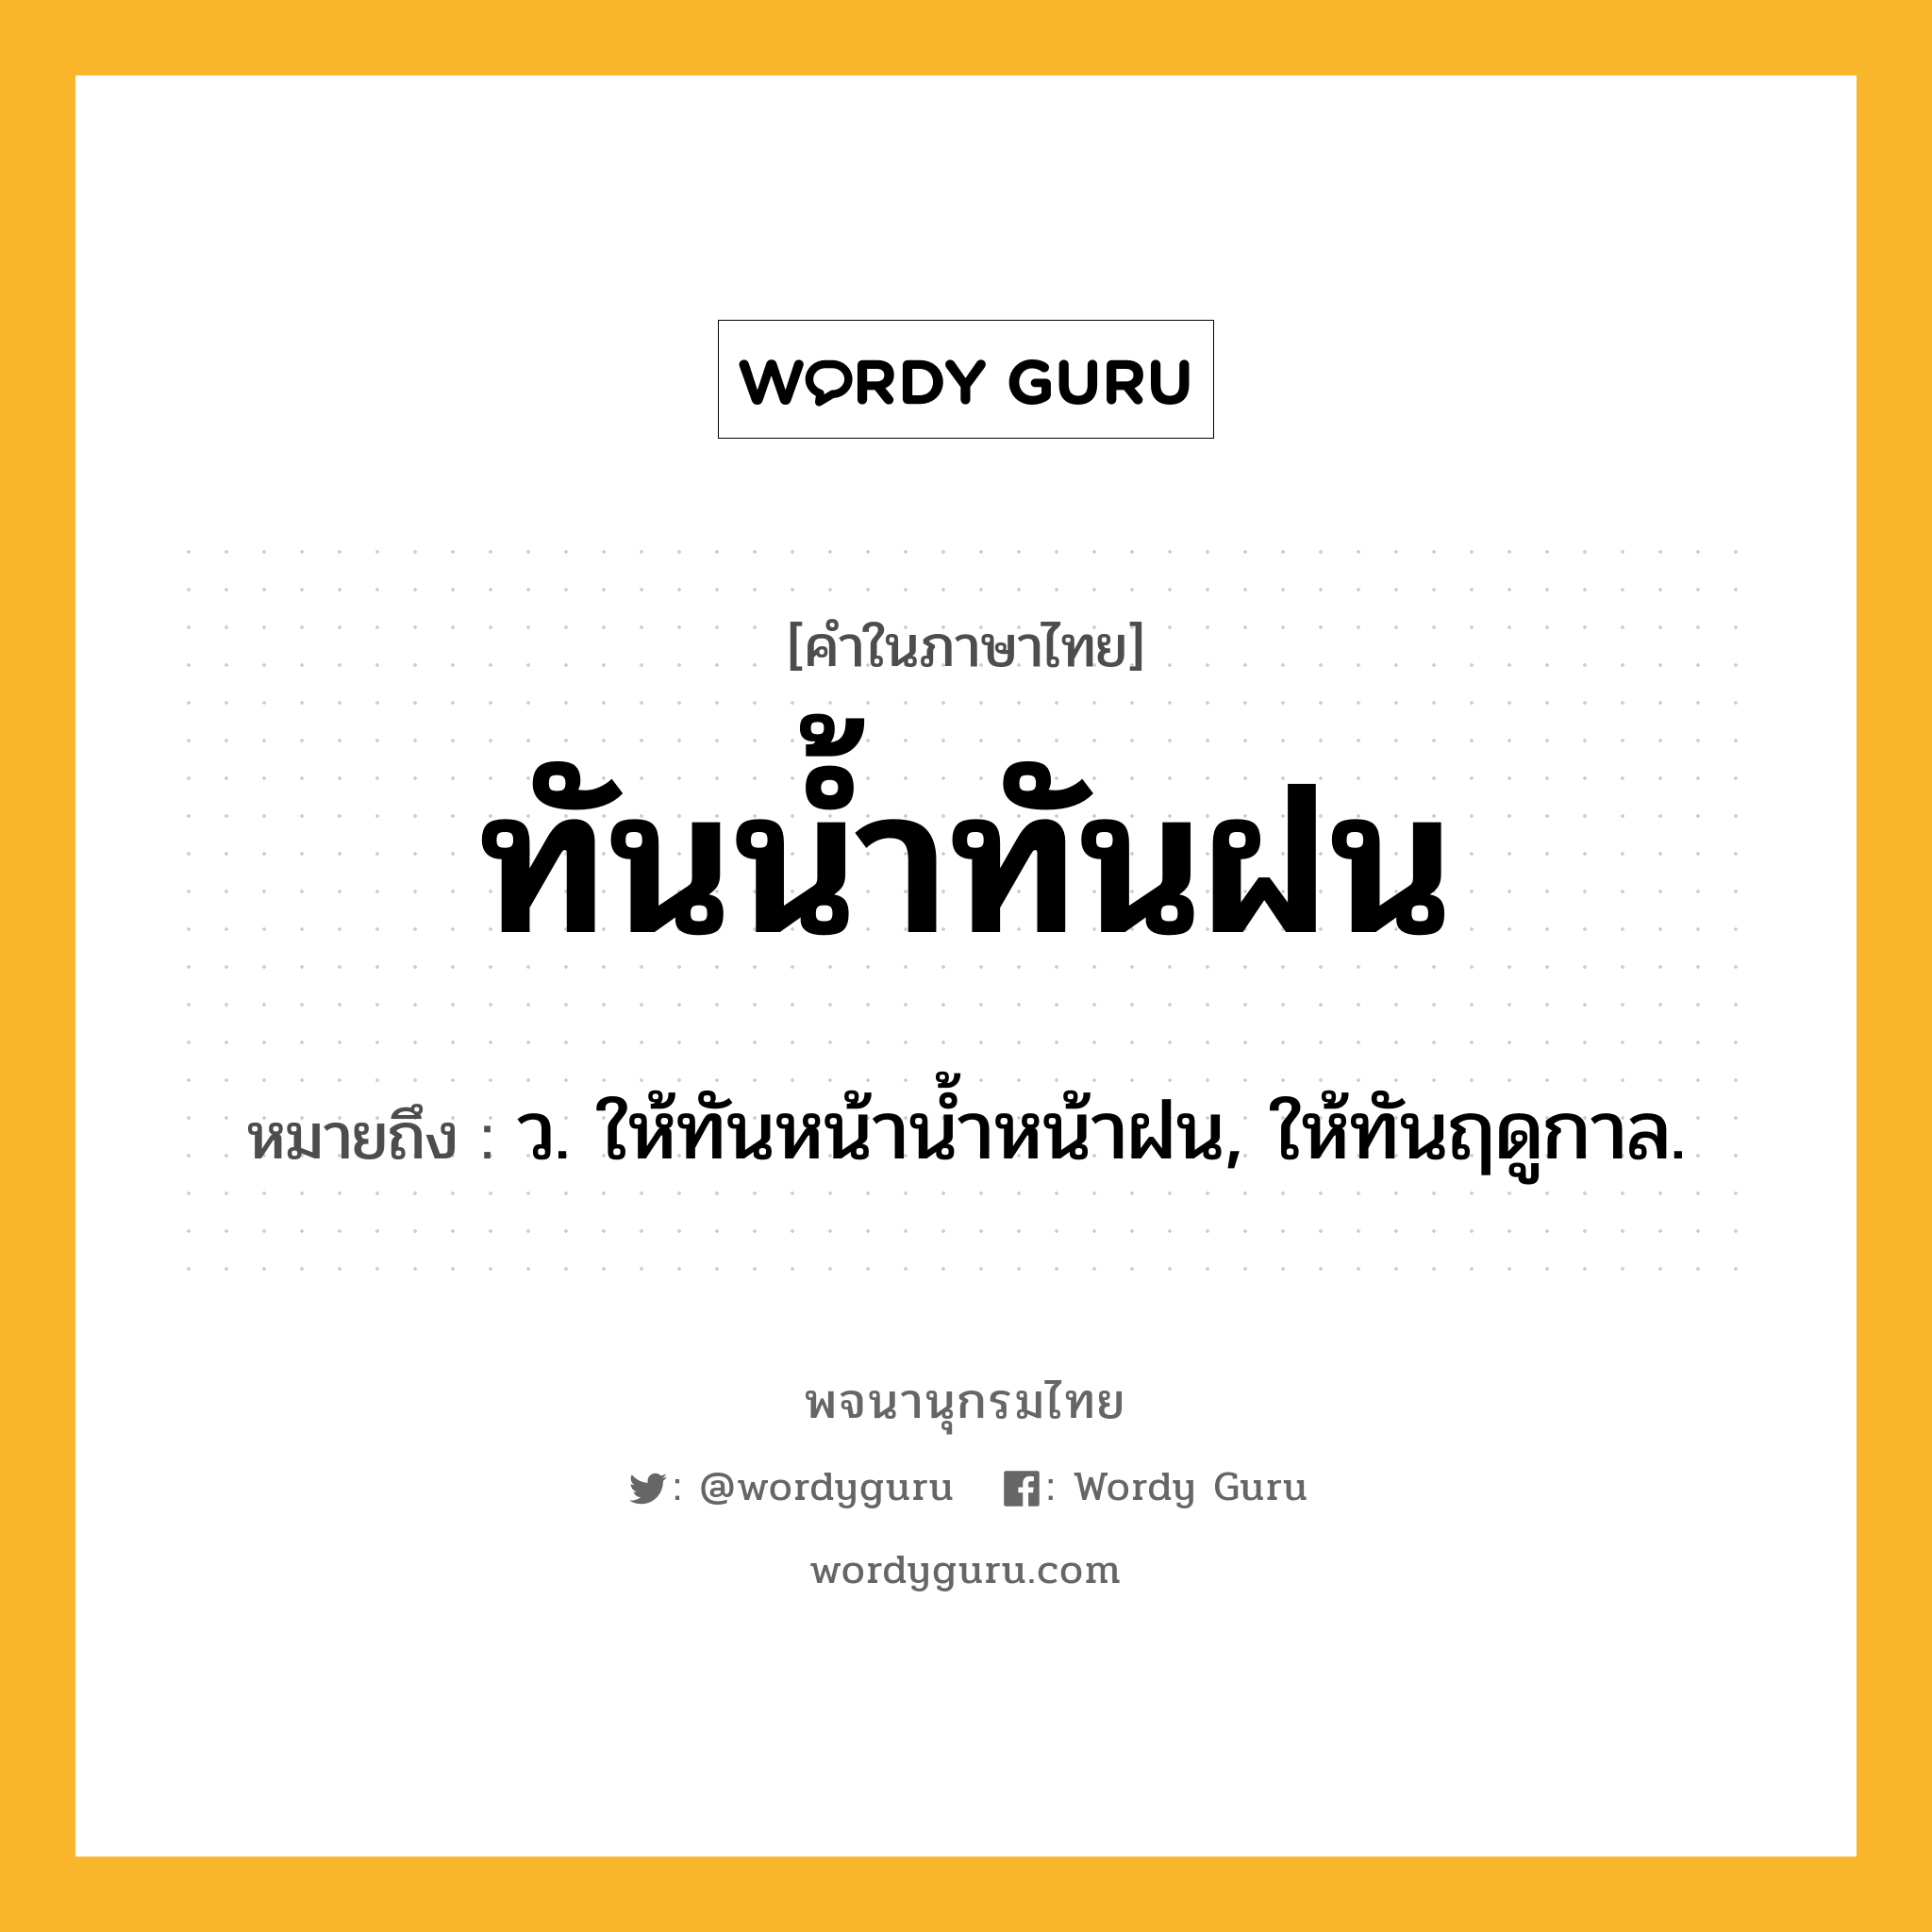 ทันน้ำทันฝน หมายถึงอะไร?, คำในภาษาไทย ทันน้ำทันฝน หมายถึง ว. ให้ทันหน้านํ้าหน้าฝน, ให้ทันฤดูกาล.